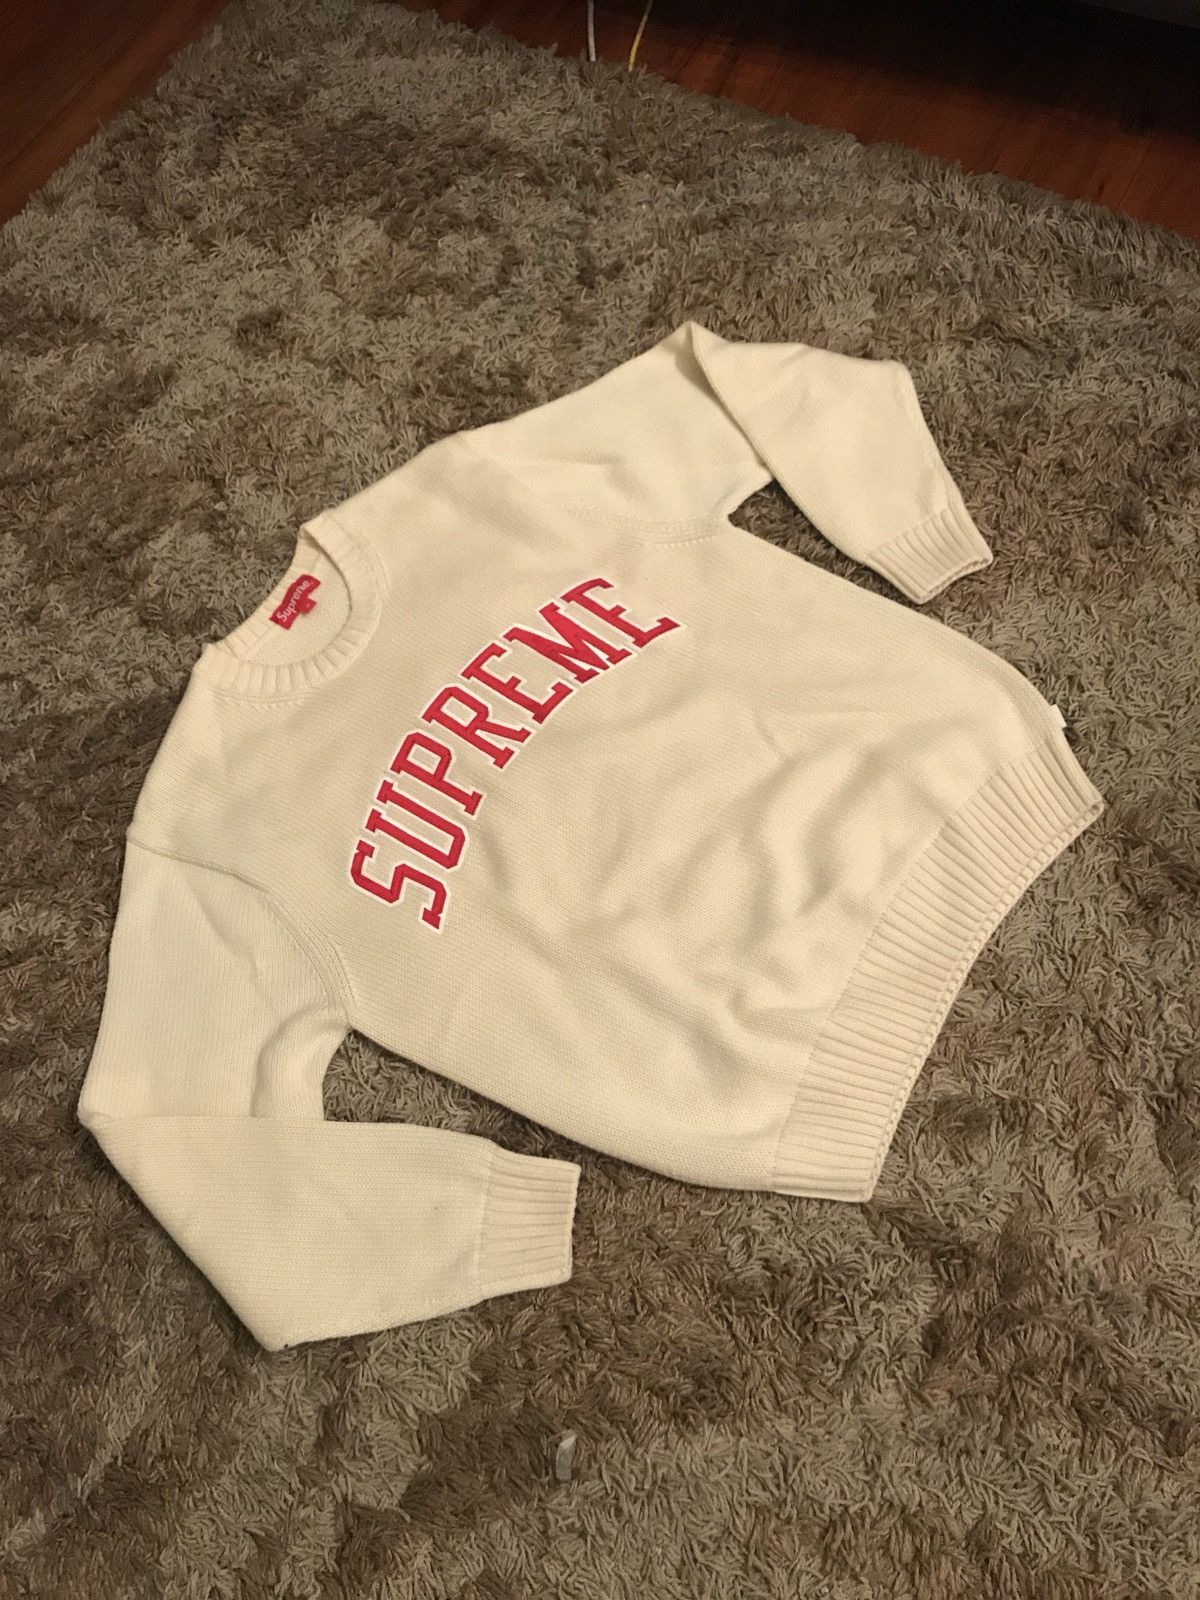 Supreme Supreme Tackle Twill Sweater | Grailed